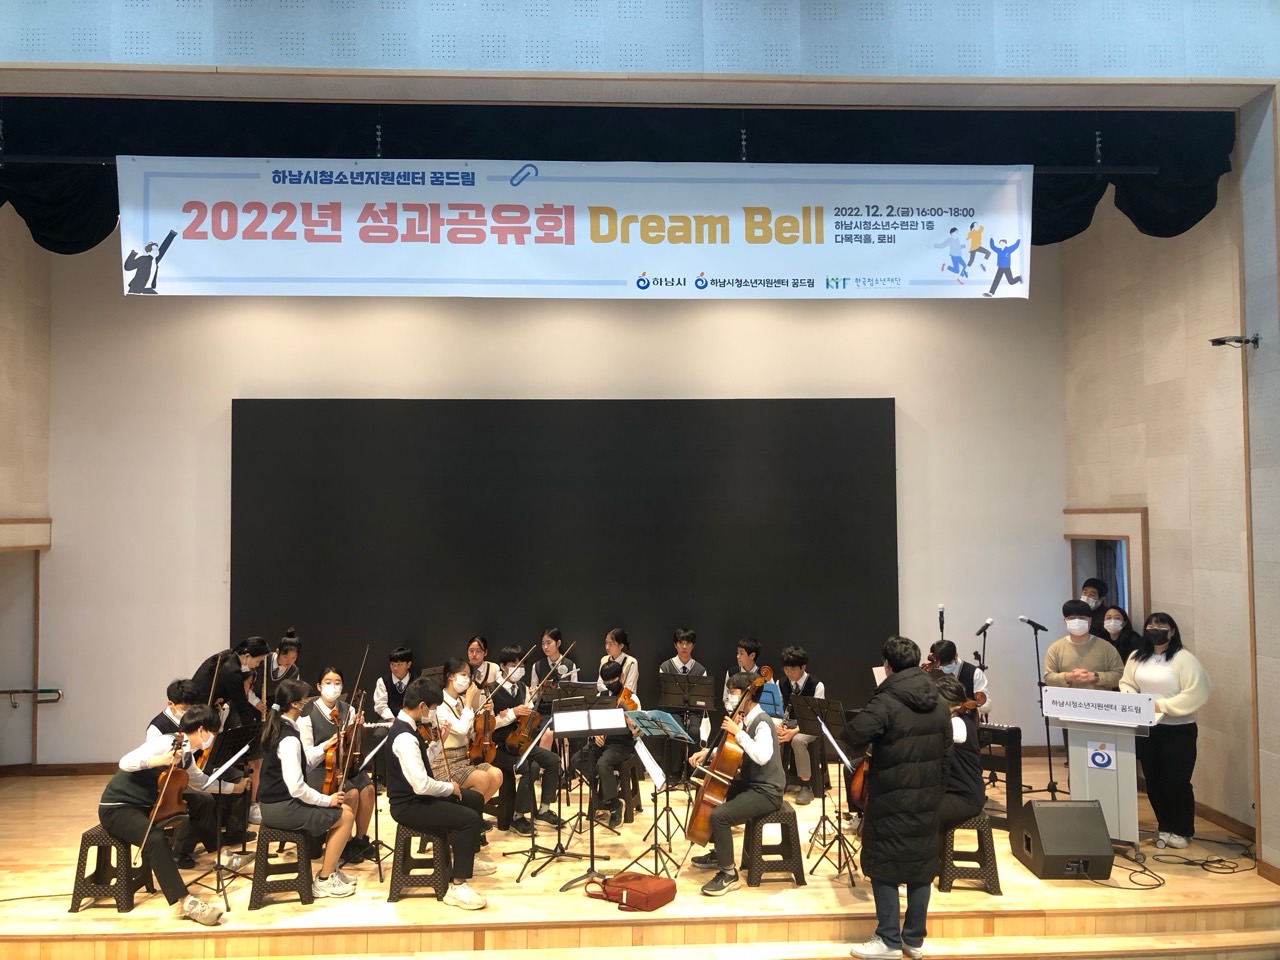 2022.12.2. 하남시청소년지원센터 성과공유회 Dream Bell 행사